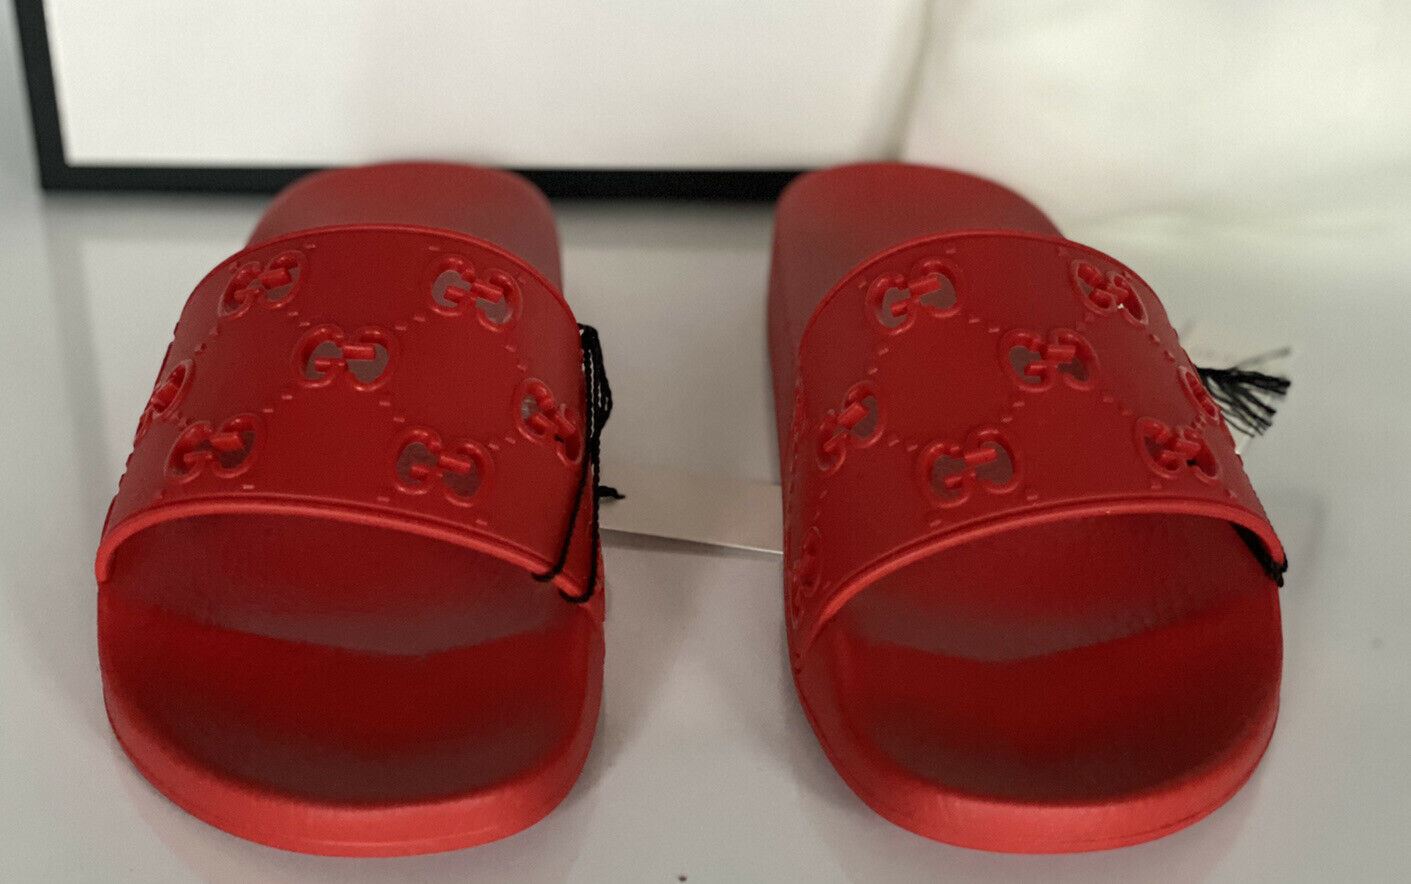 Мужские красные сандалии NIB Gucci GG Rubber Hibiscus 9,5 США (Gucci 9) Италия 575957 